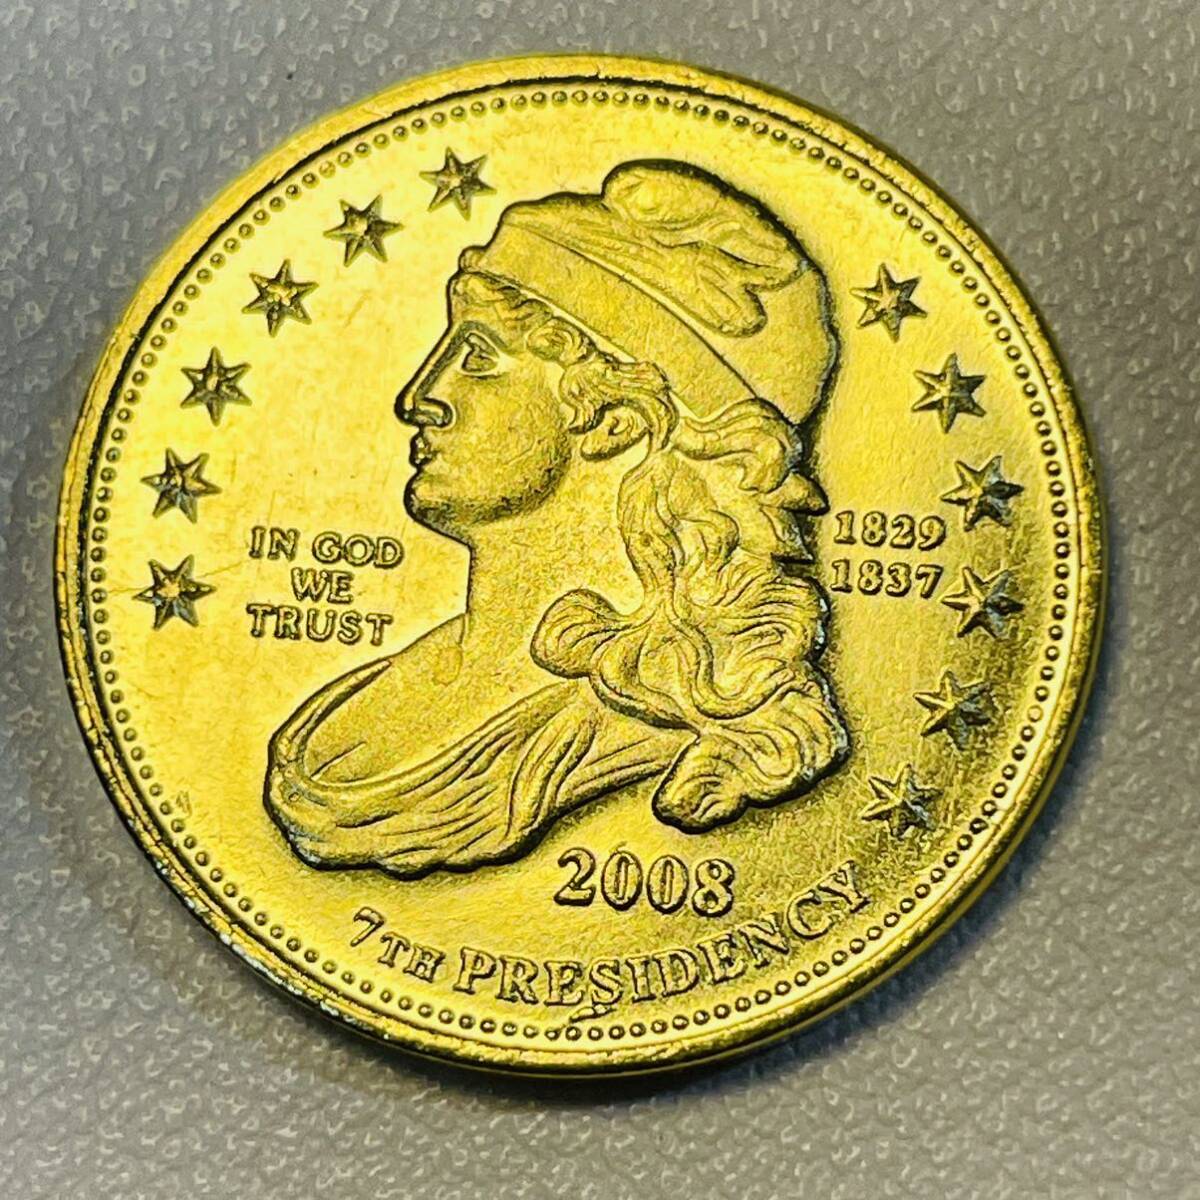 アメリカ 硬貨 古銭 最初の者シリーズ 2008年 アンドリュー・ジャクソンの自由 第7代大統領 戦争の英雄 記念幣 コイン 重7.95g_画像2